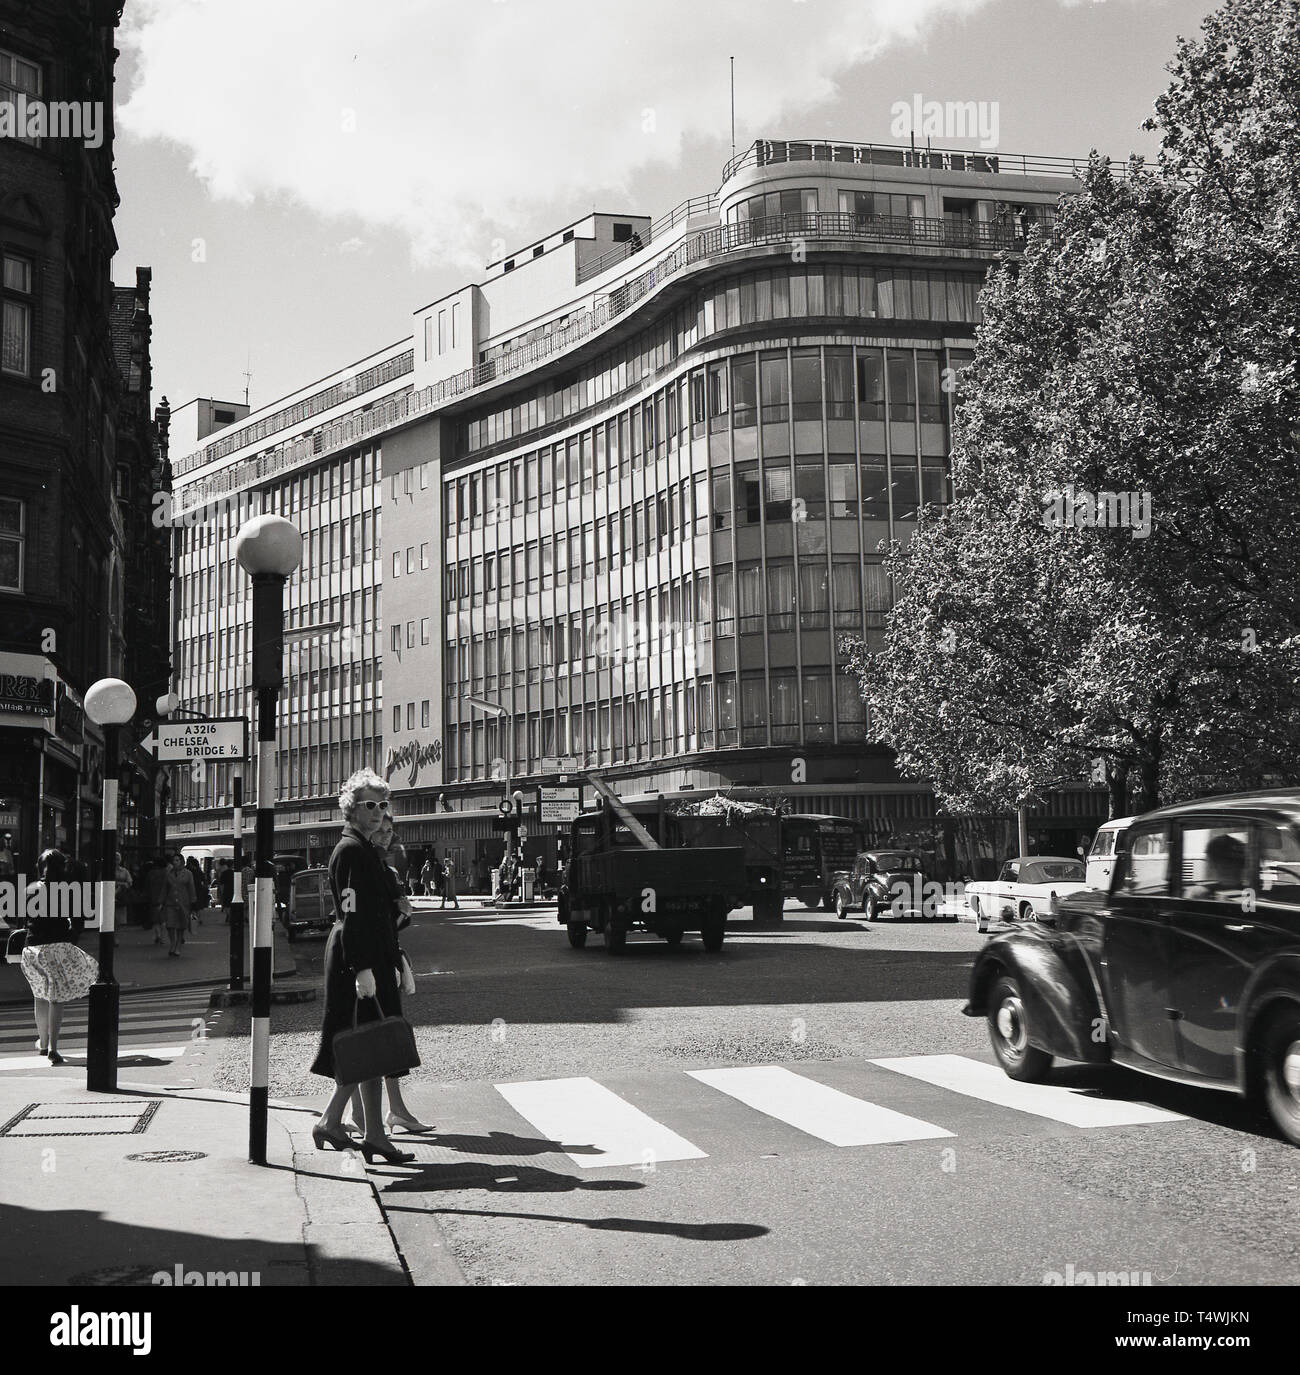 Années 1960, historiques, deux dames en traversant un passage à niveau à la station Sloane Square, Chelsea, Londres, avec la grande façade de verre, grand magasin Peter Jones, fondée en 1877, sur la rue Kings Road, vu dans la distance. Banque D'Images